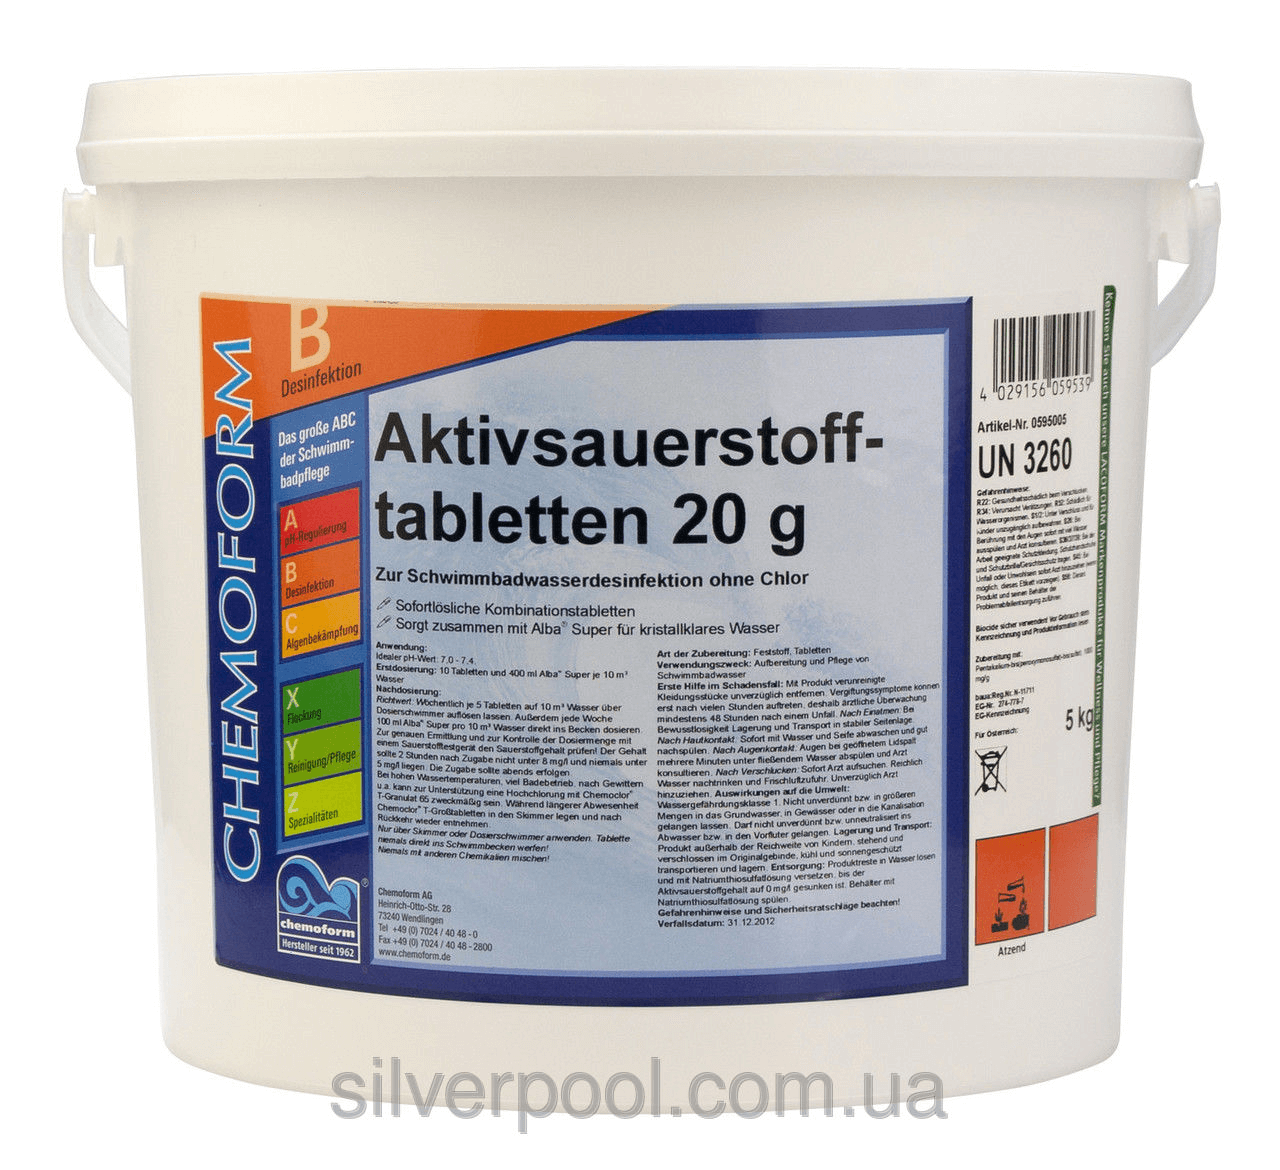 Средство для дезинфекции воды бассейна кислород в таблетках O2 tabletten Fresh, 5 кг (в таблетках по 20 гр).